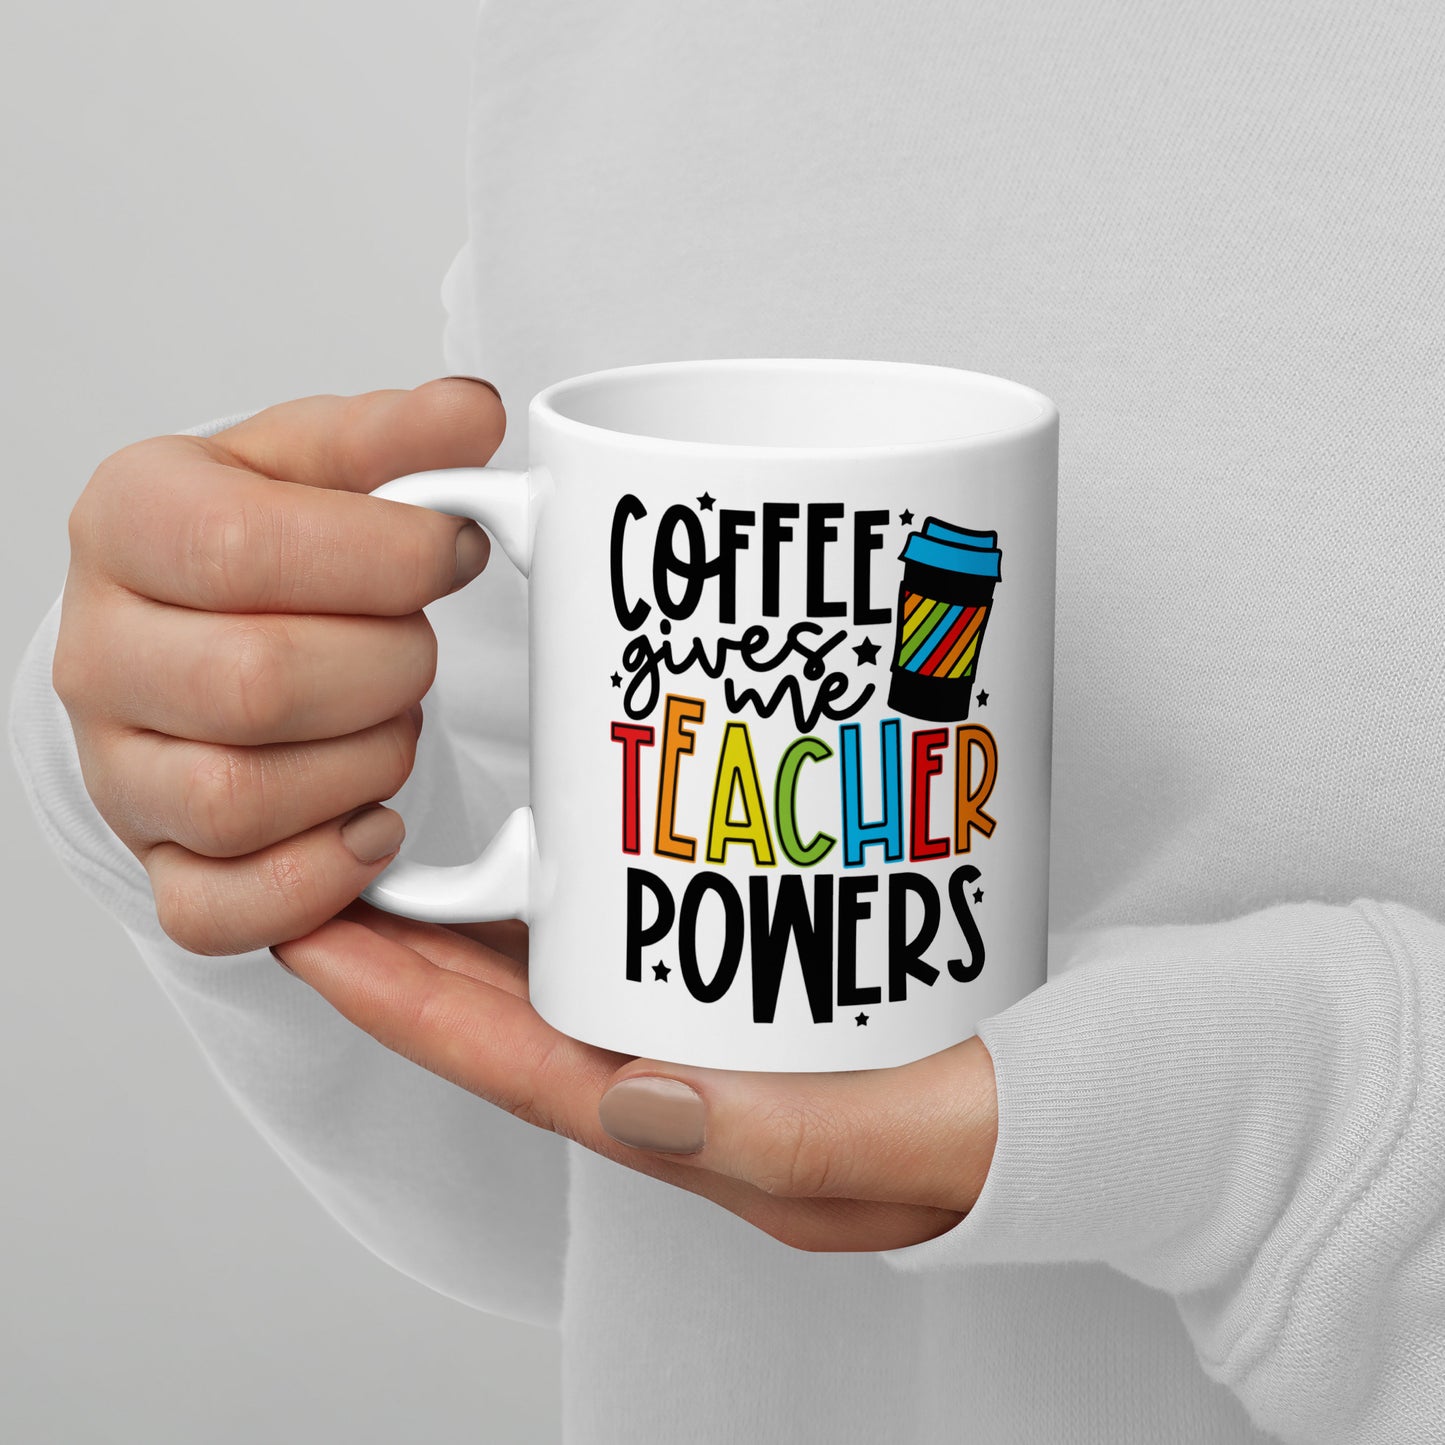 Coffee Gives Me Teacher Powers Mug